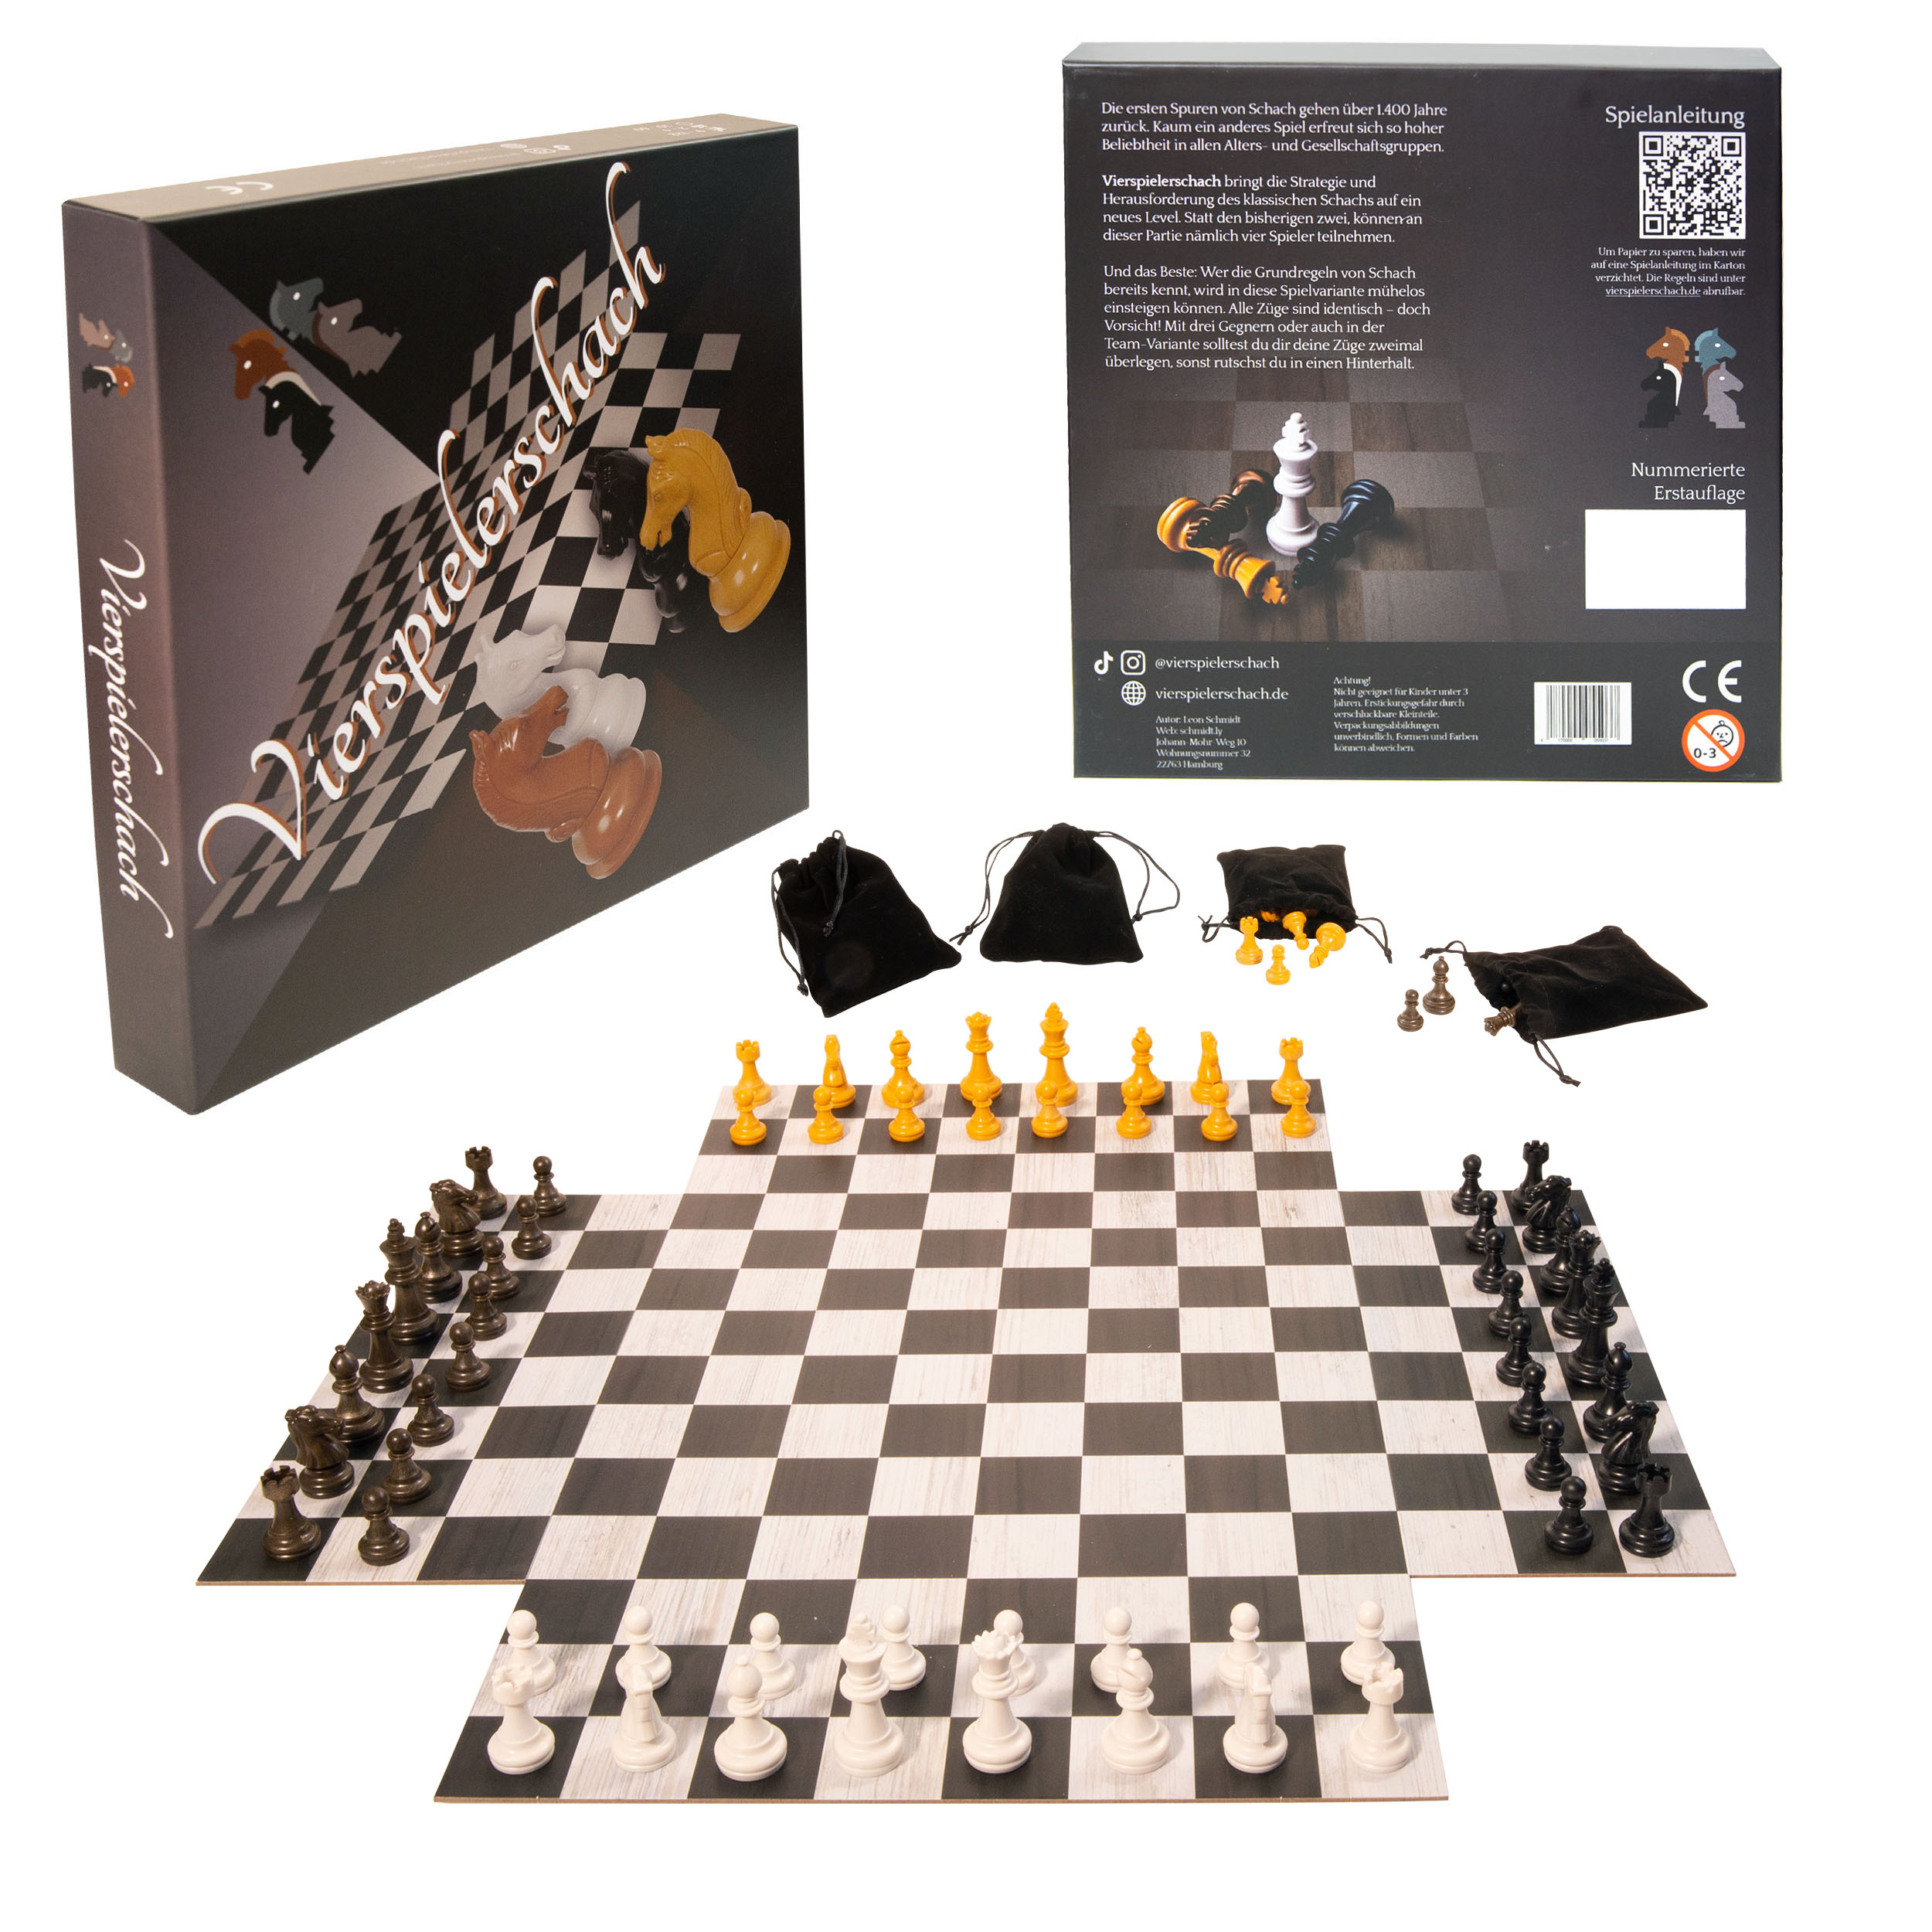 Schach mit 4 Spieler*innen gleichzeitig spielen - Alle gleichzeitig  gegeneinander